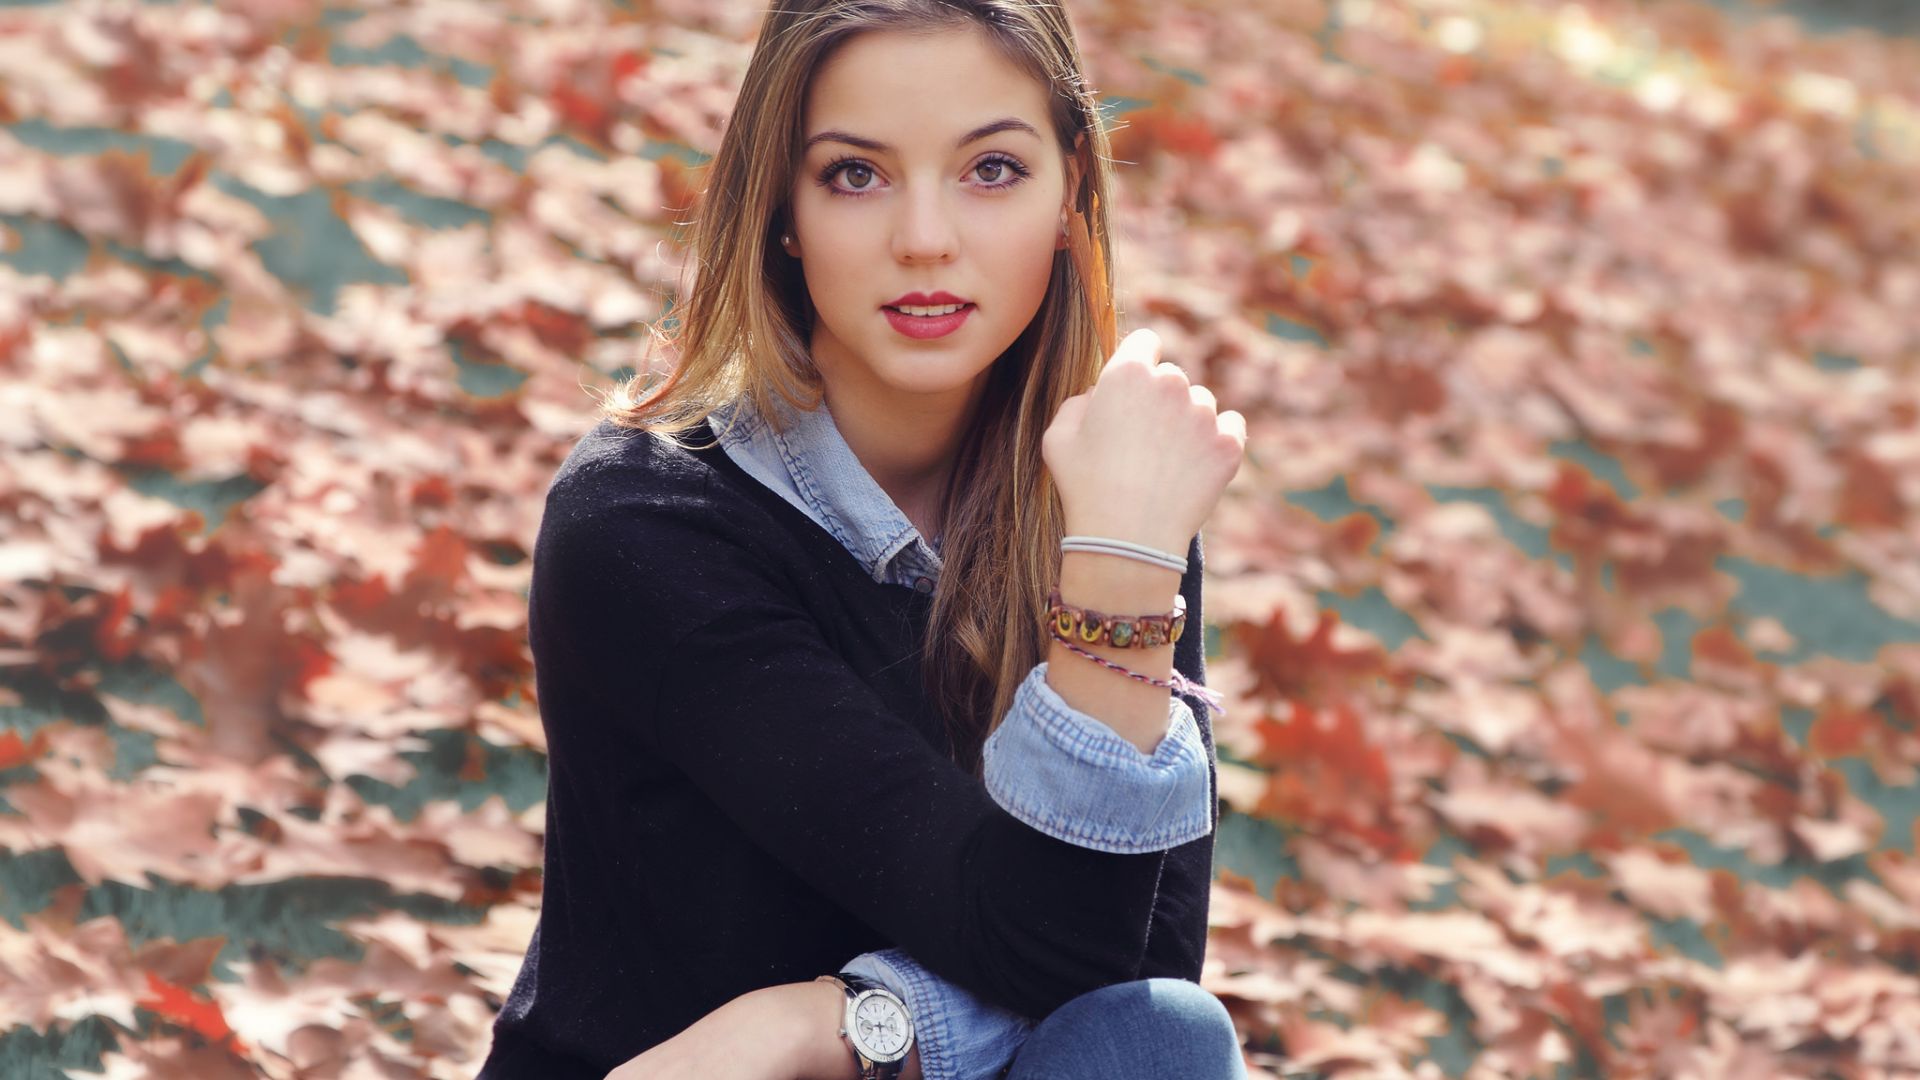 Wallpaper Brunette, girl model, sitting, autumn